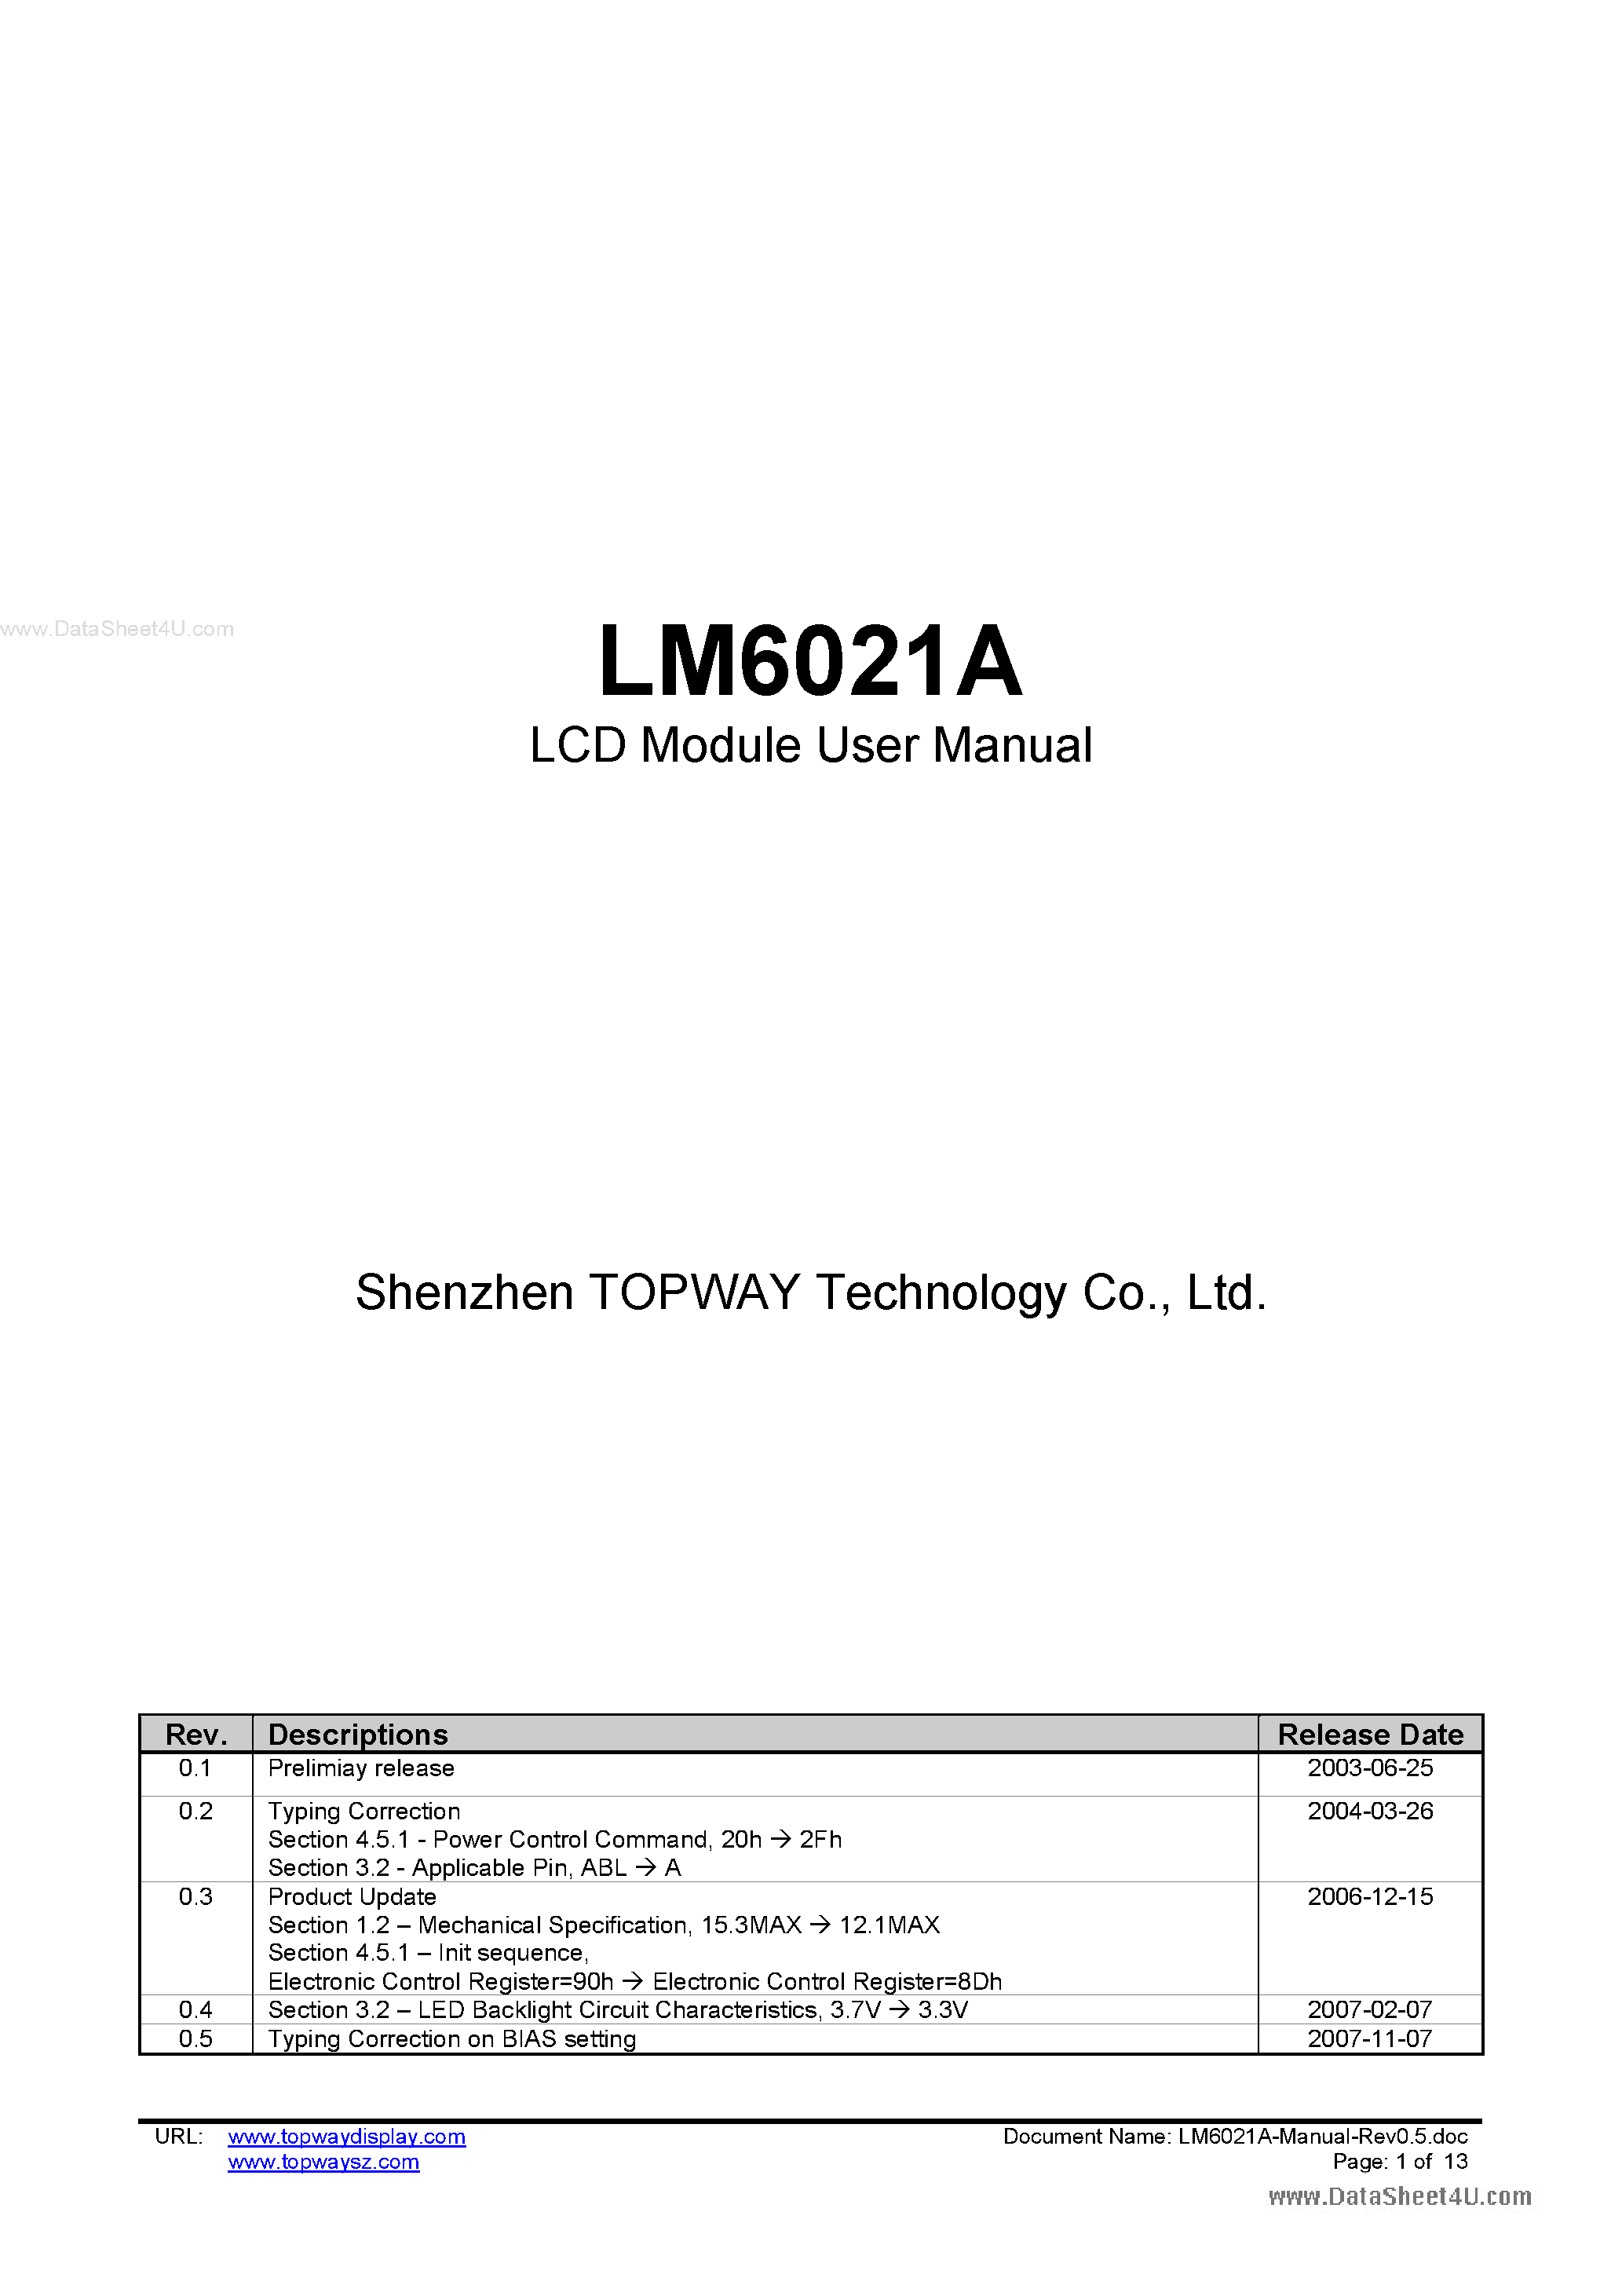 Даташит LM6021A - LCD Module страница 1